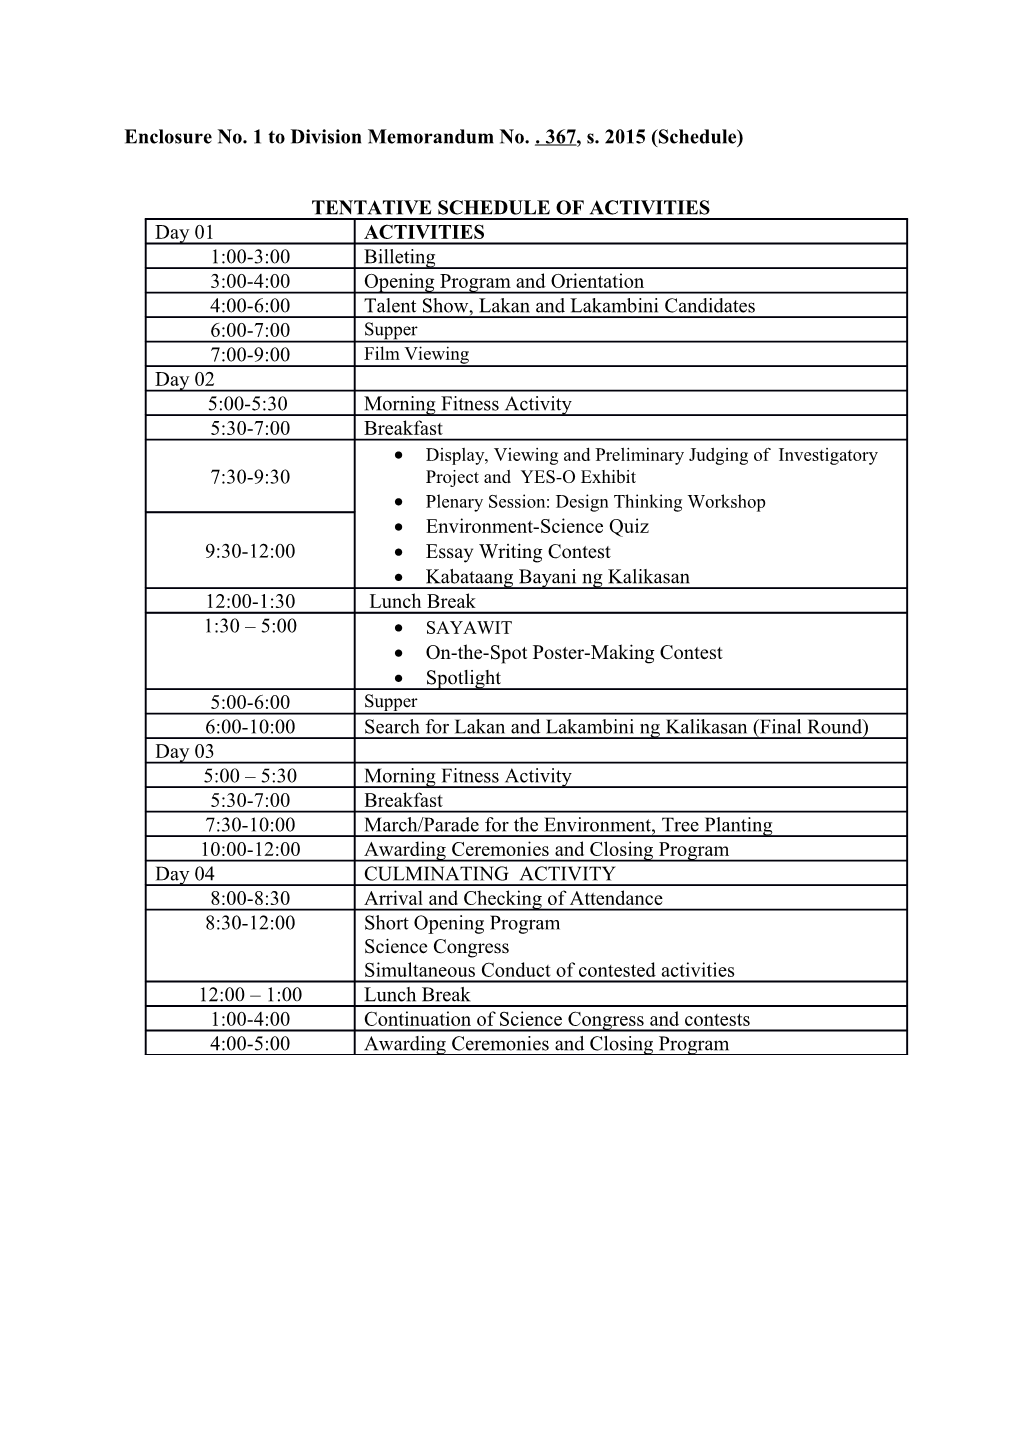 Enclosureno. 1 to Division Memorandum No. . 367, S. 2015 (Schedule)